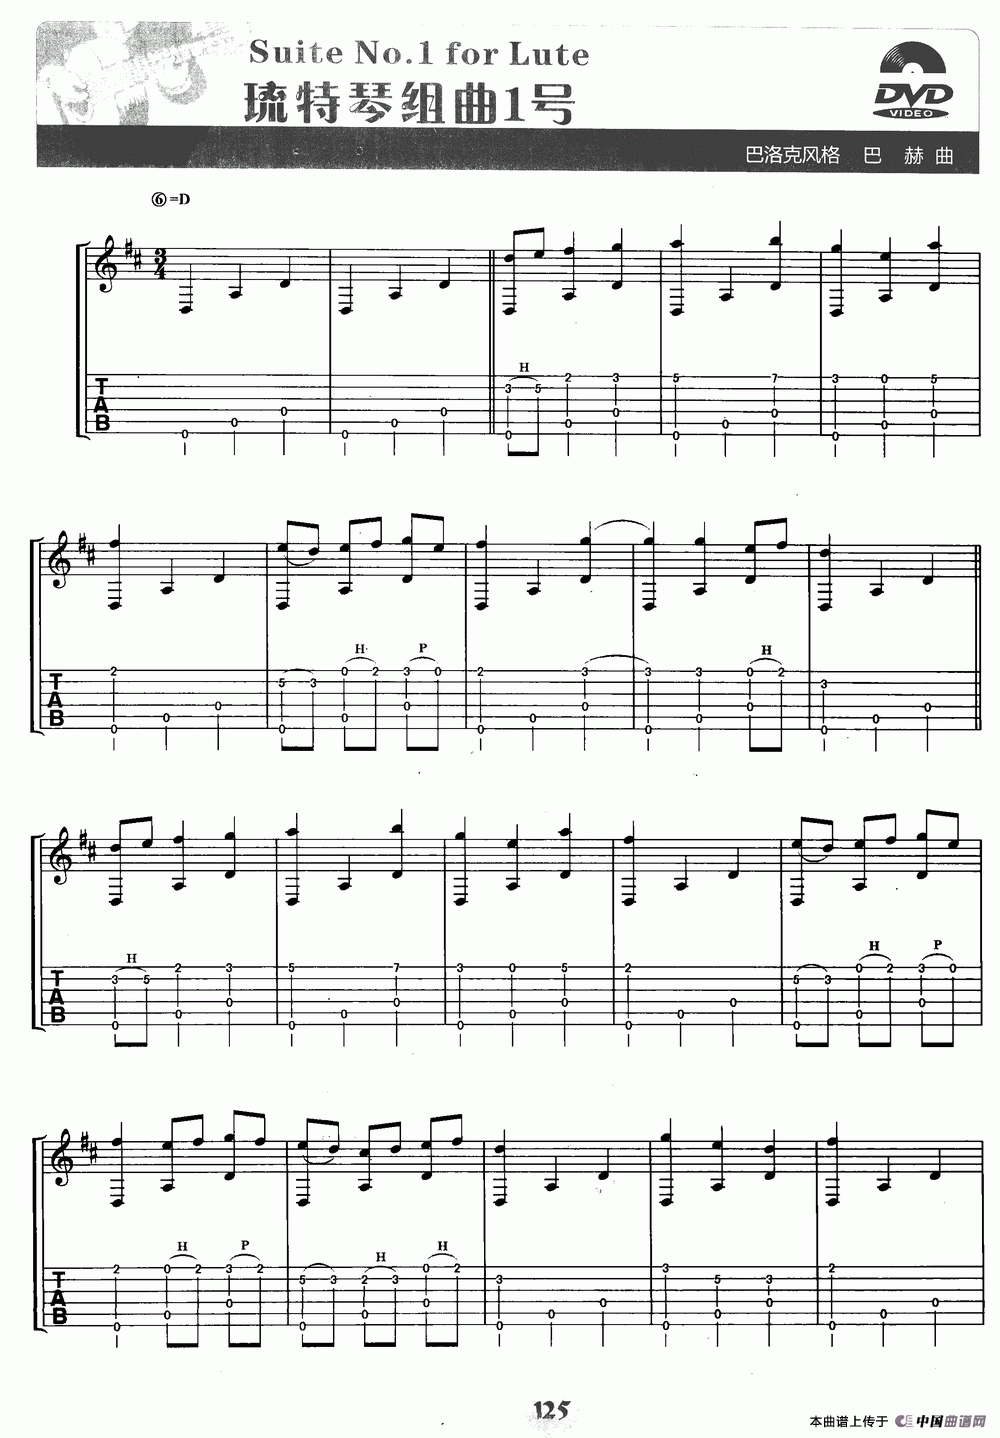 琉特琴组曲1号（Suite No.1 for Lute）